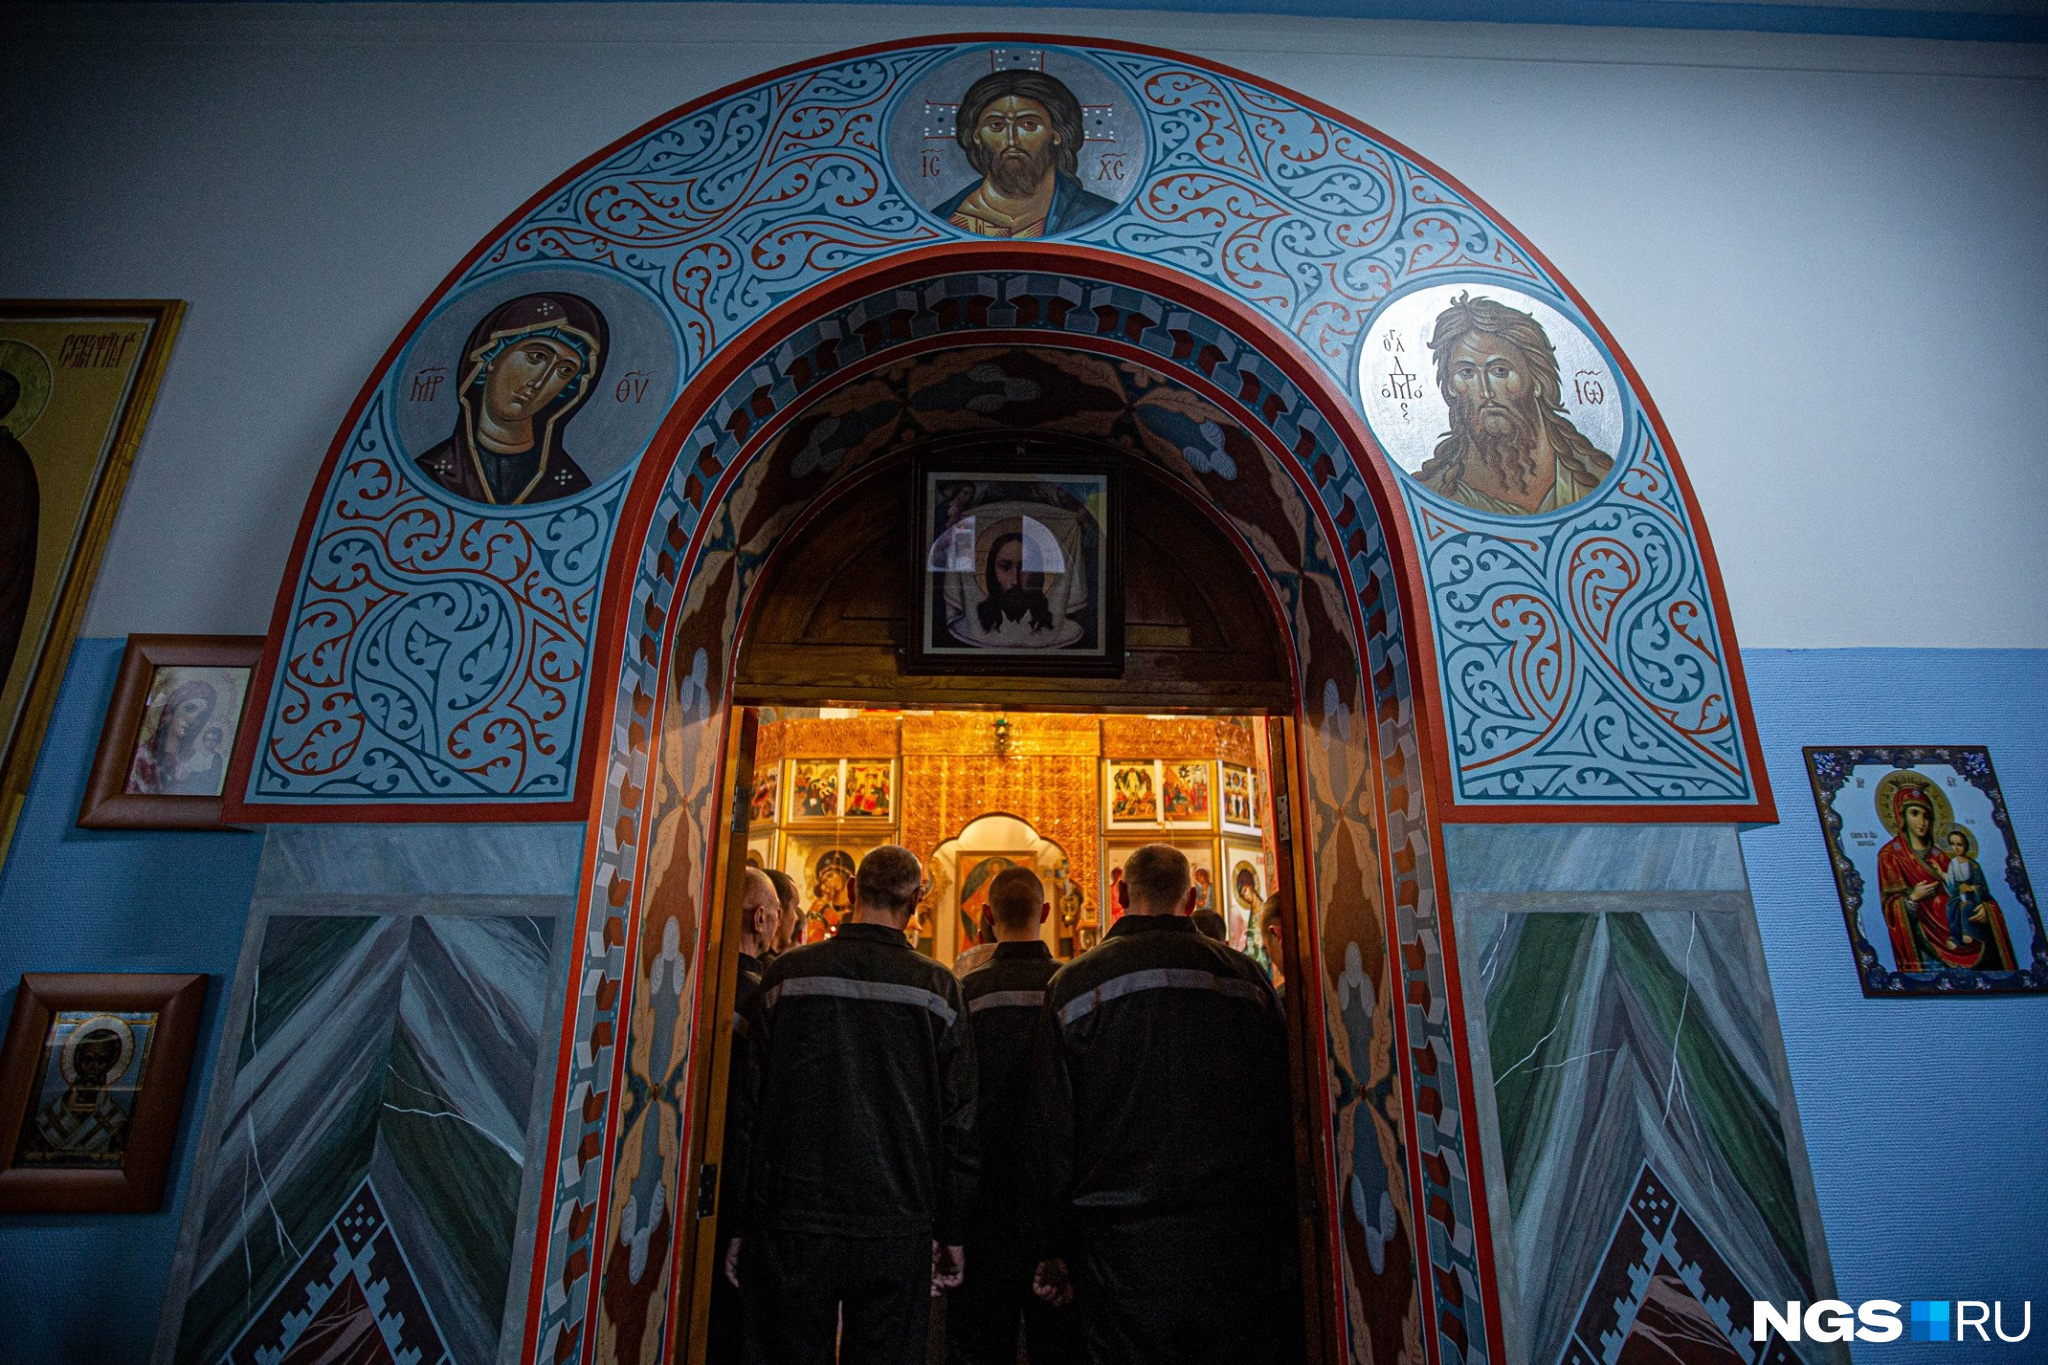 Те, кто не хотел окунаться в иордань, в новосибирской колонии могли просто помолиться